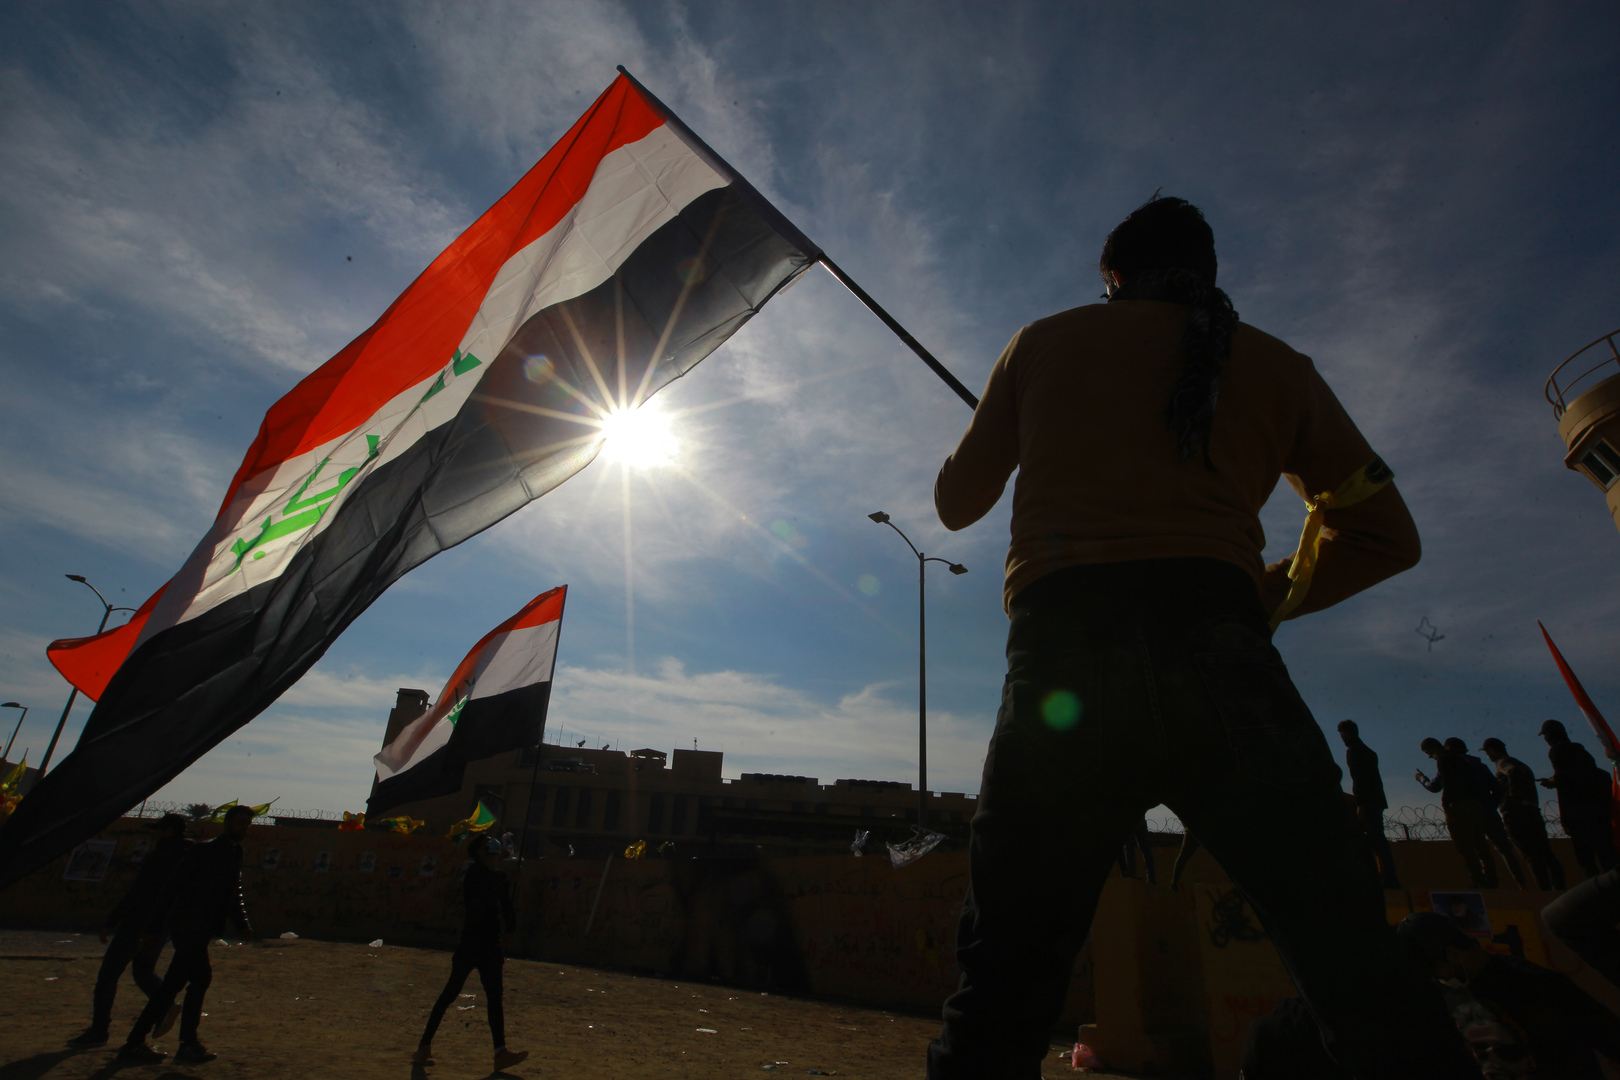 الحكومة العراقية تتوقع وصول عدد مواطنيها إلى 50 مليون بحلول عام 2030